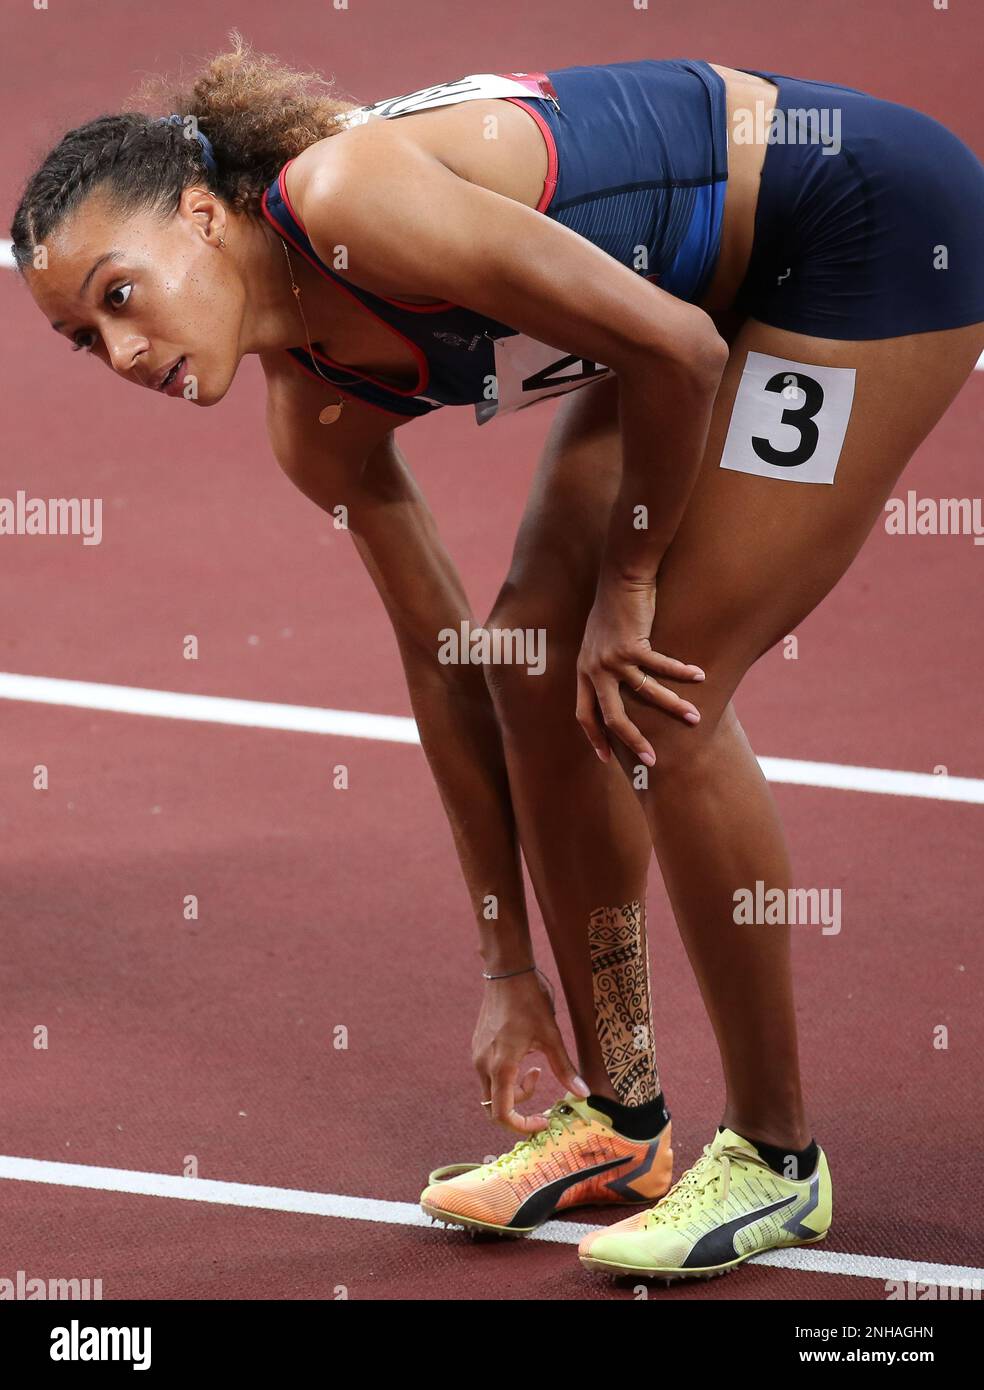 06 AOÛT 2021 - Tokyo, Japon : Cynthia Leduc de France réagit à la finale du relais 4 x 100m des femmes athlétiques aux Jeux Olympiques de Tokyo en 2020 (photo : Mick Banque D'Images